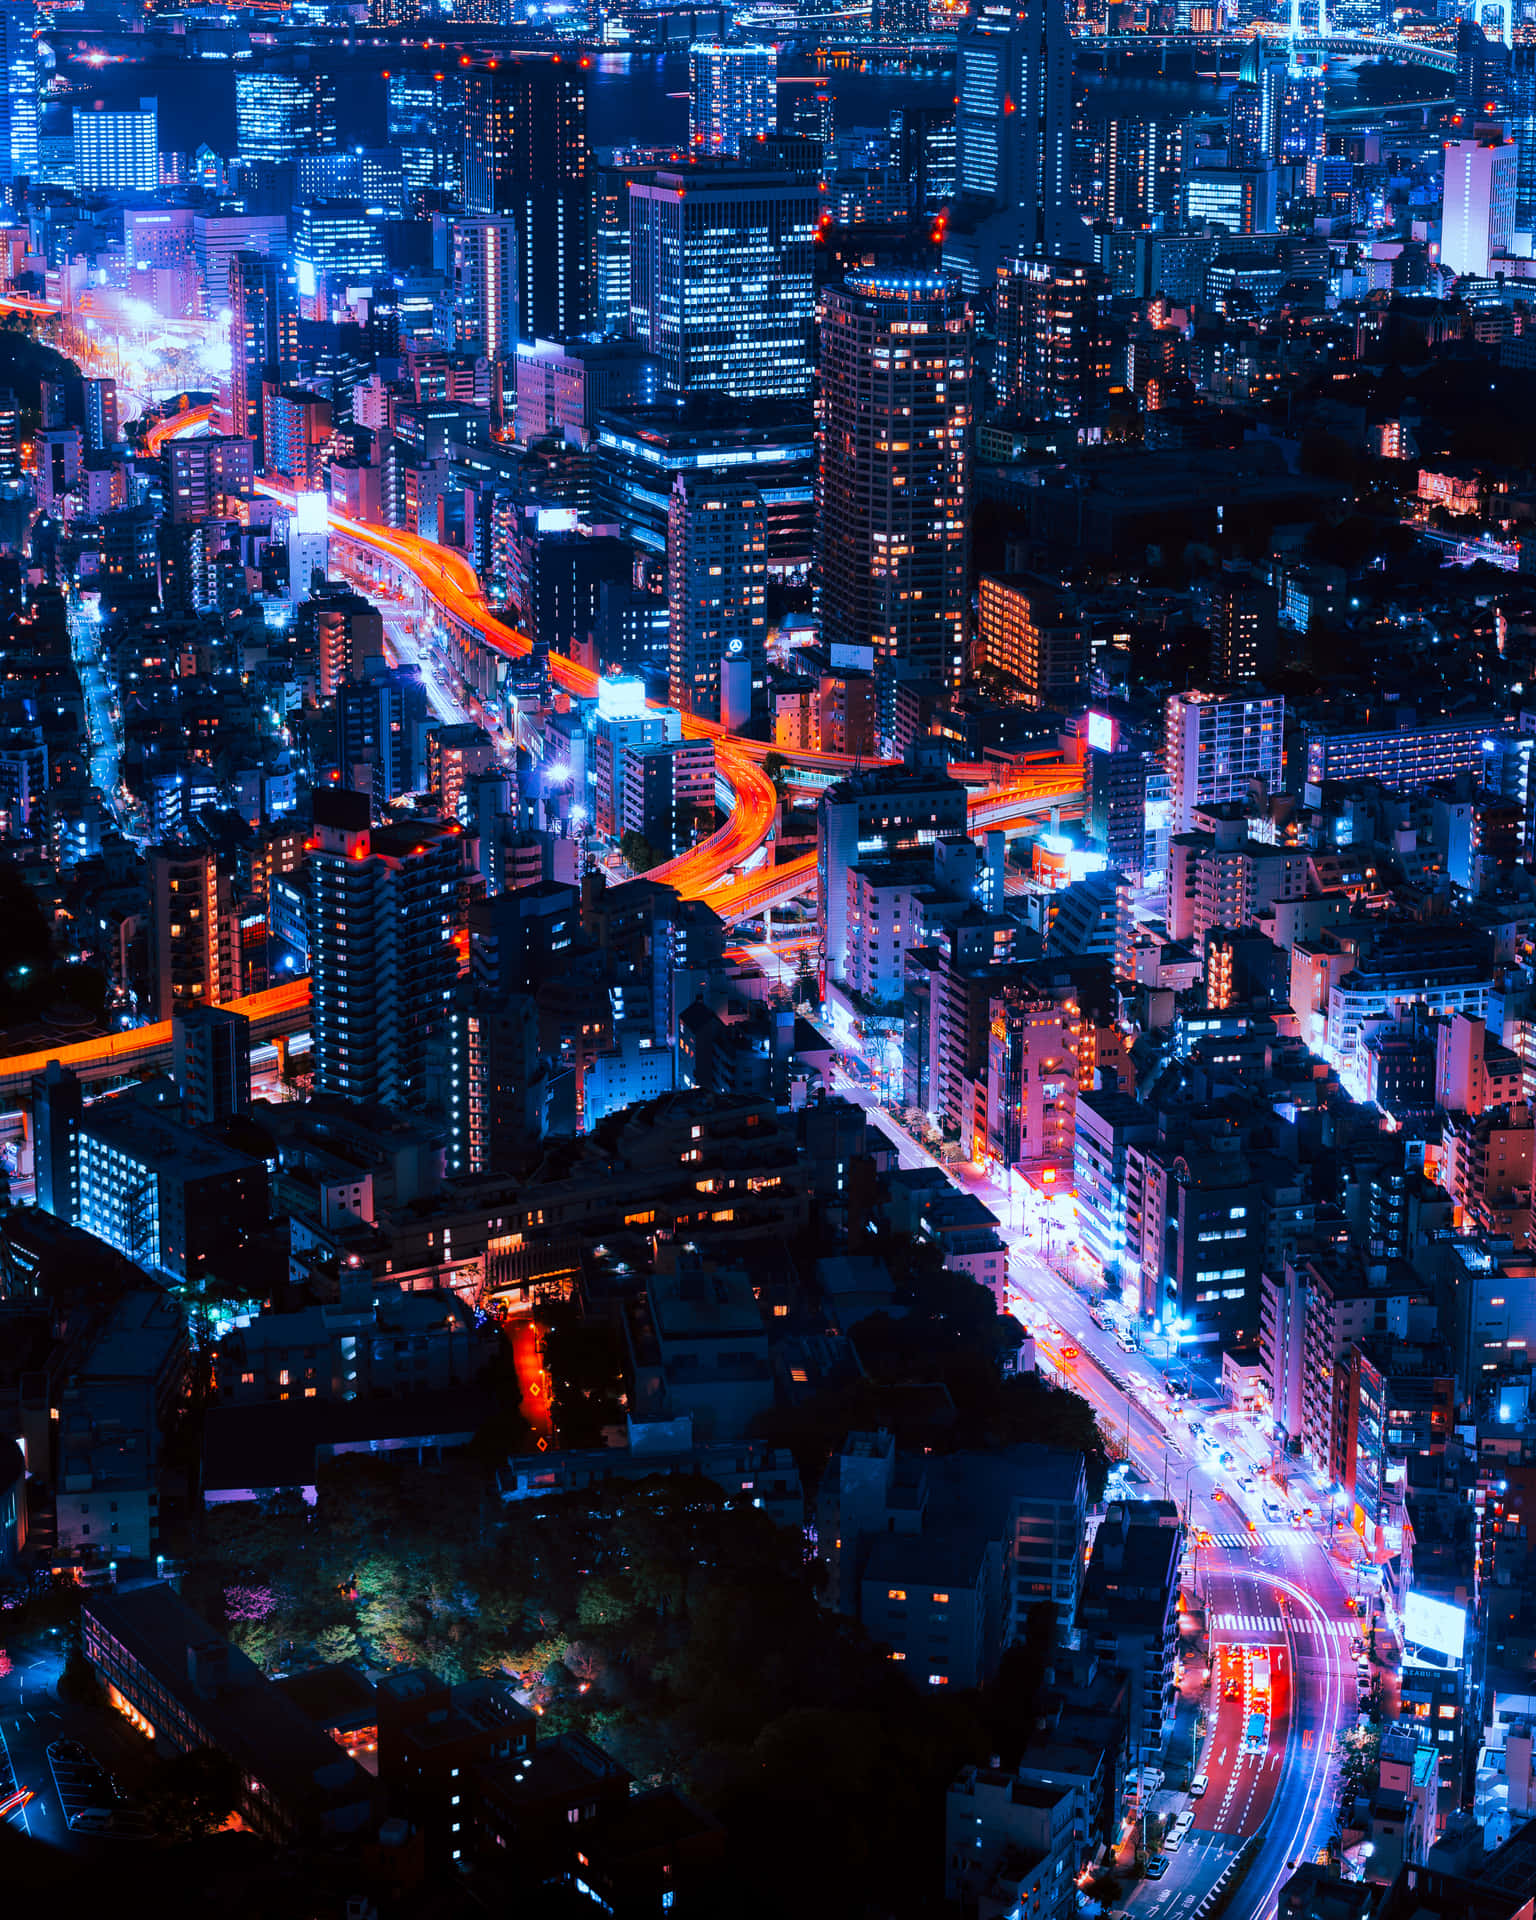 Experienciea Energia Vibrante De Neon City Em Seu Papel De Parede Do Computador Ou Celular. Papel de Parede